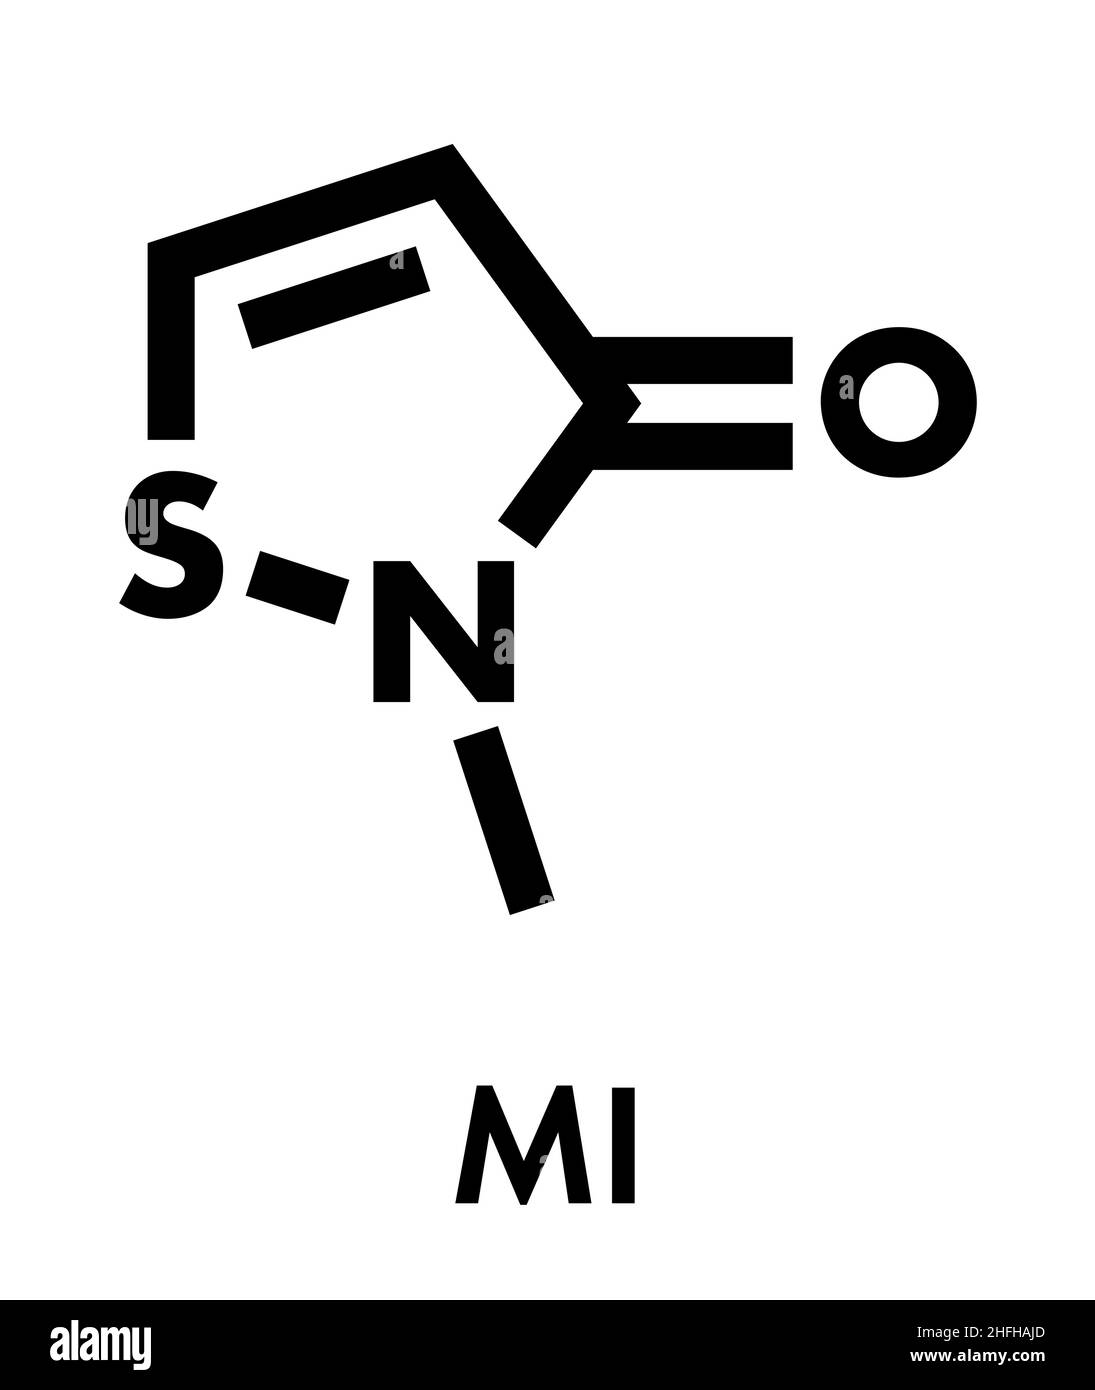 Methylisothiazolinon (mit, MI) Konservierungsstoff Molekül, chemische Struktur. Häufig in wasserbasierten Produkten, z. B. Kosmetika, verwendet. Skelettformel. Stock Vektor